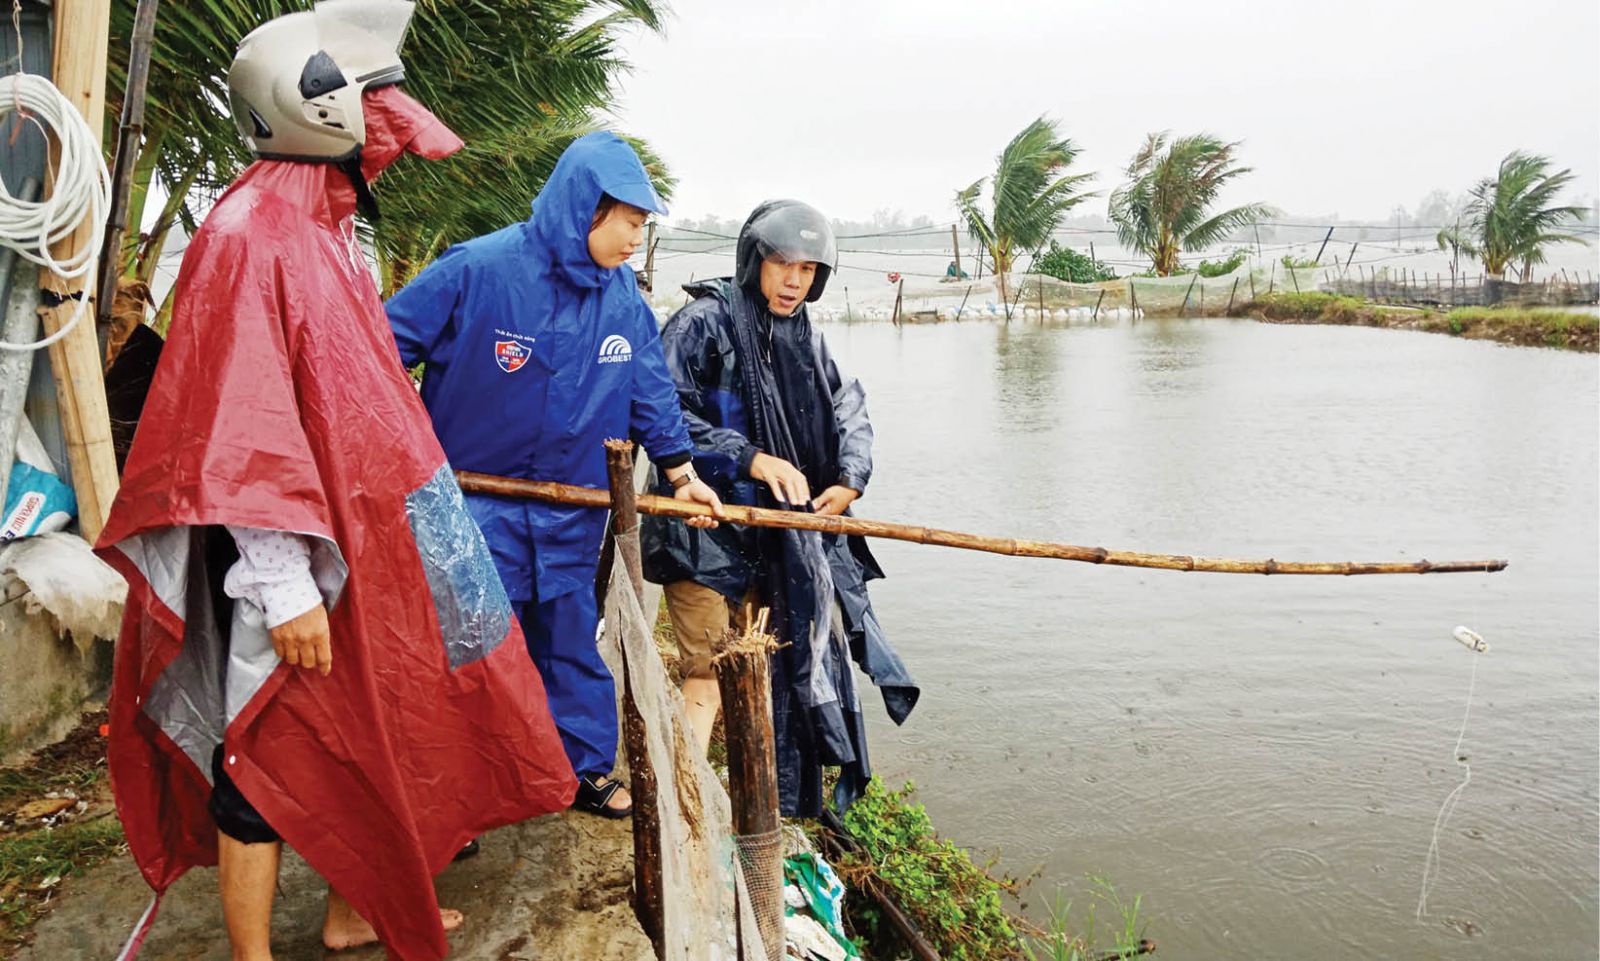 Đưa cá tôm “đi qua” những mùa vượt lũ an toàn ở Thừa Thiên Huế - Ảnh 1.